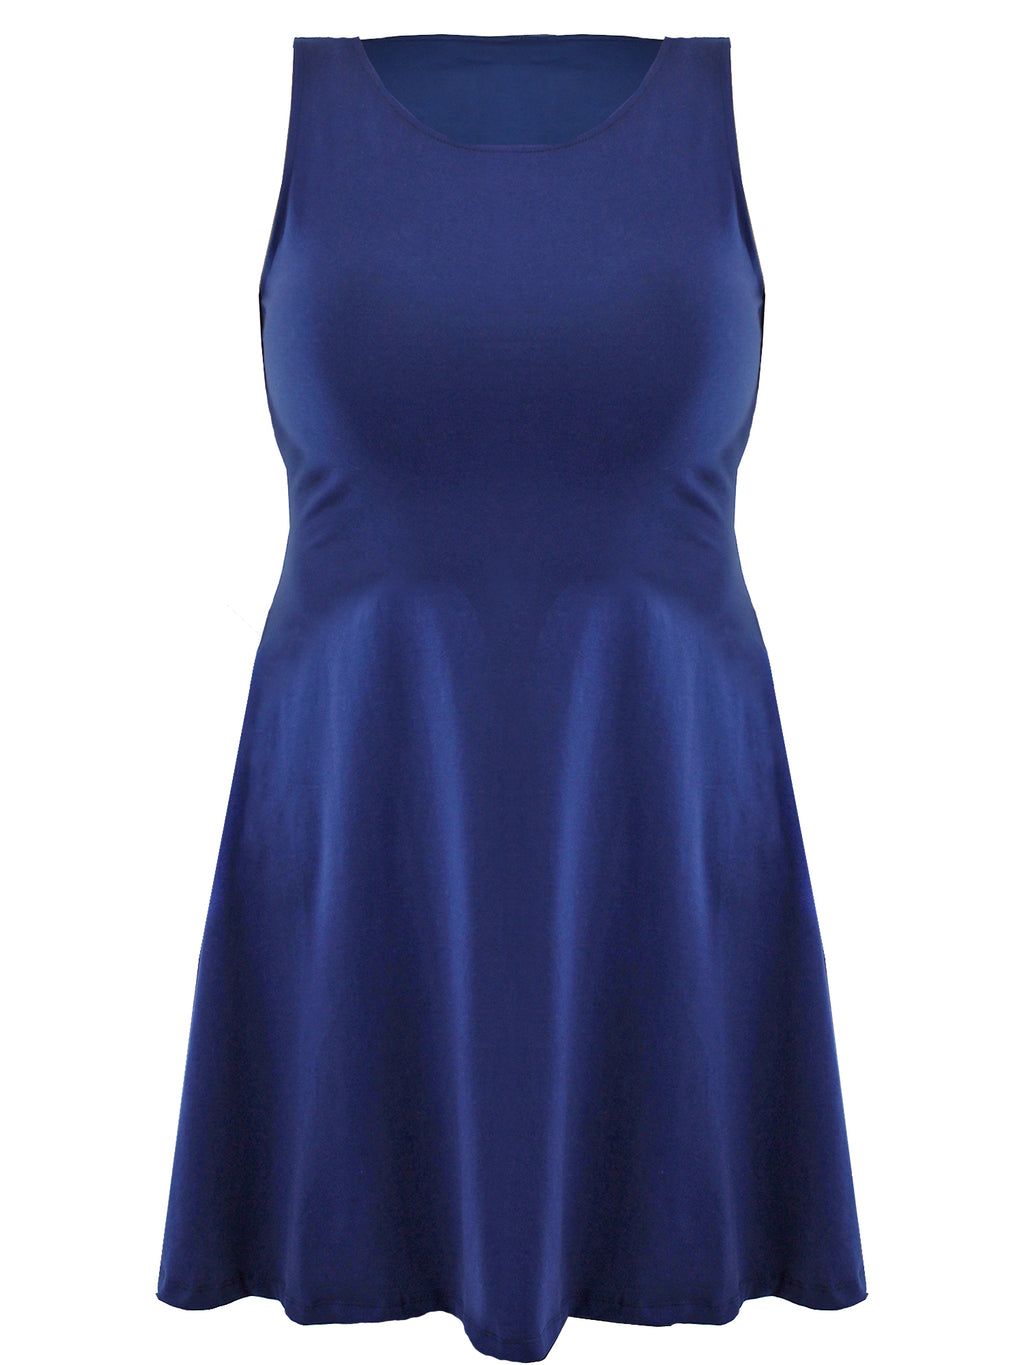 Womens Plus Size Navy Blue Swing Dress